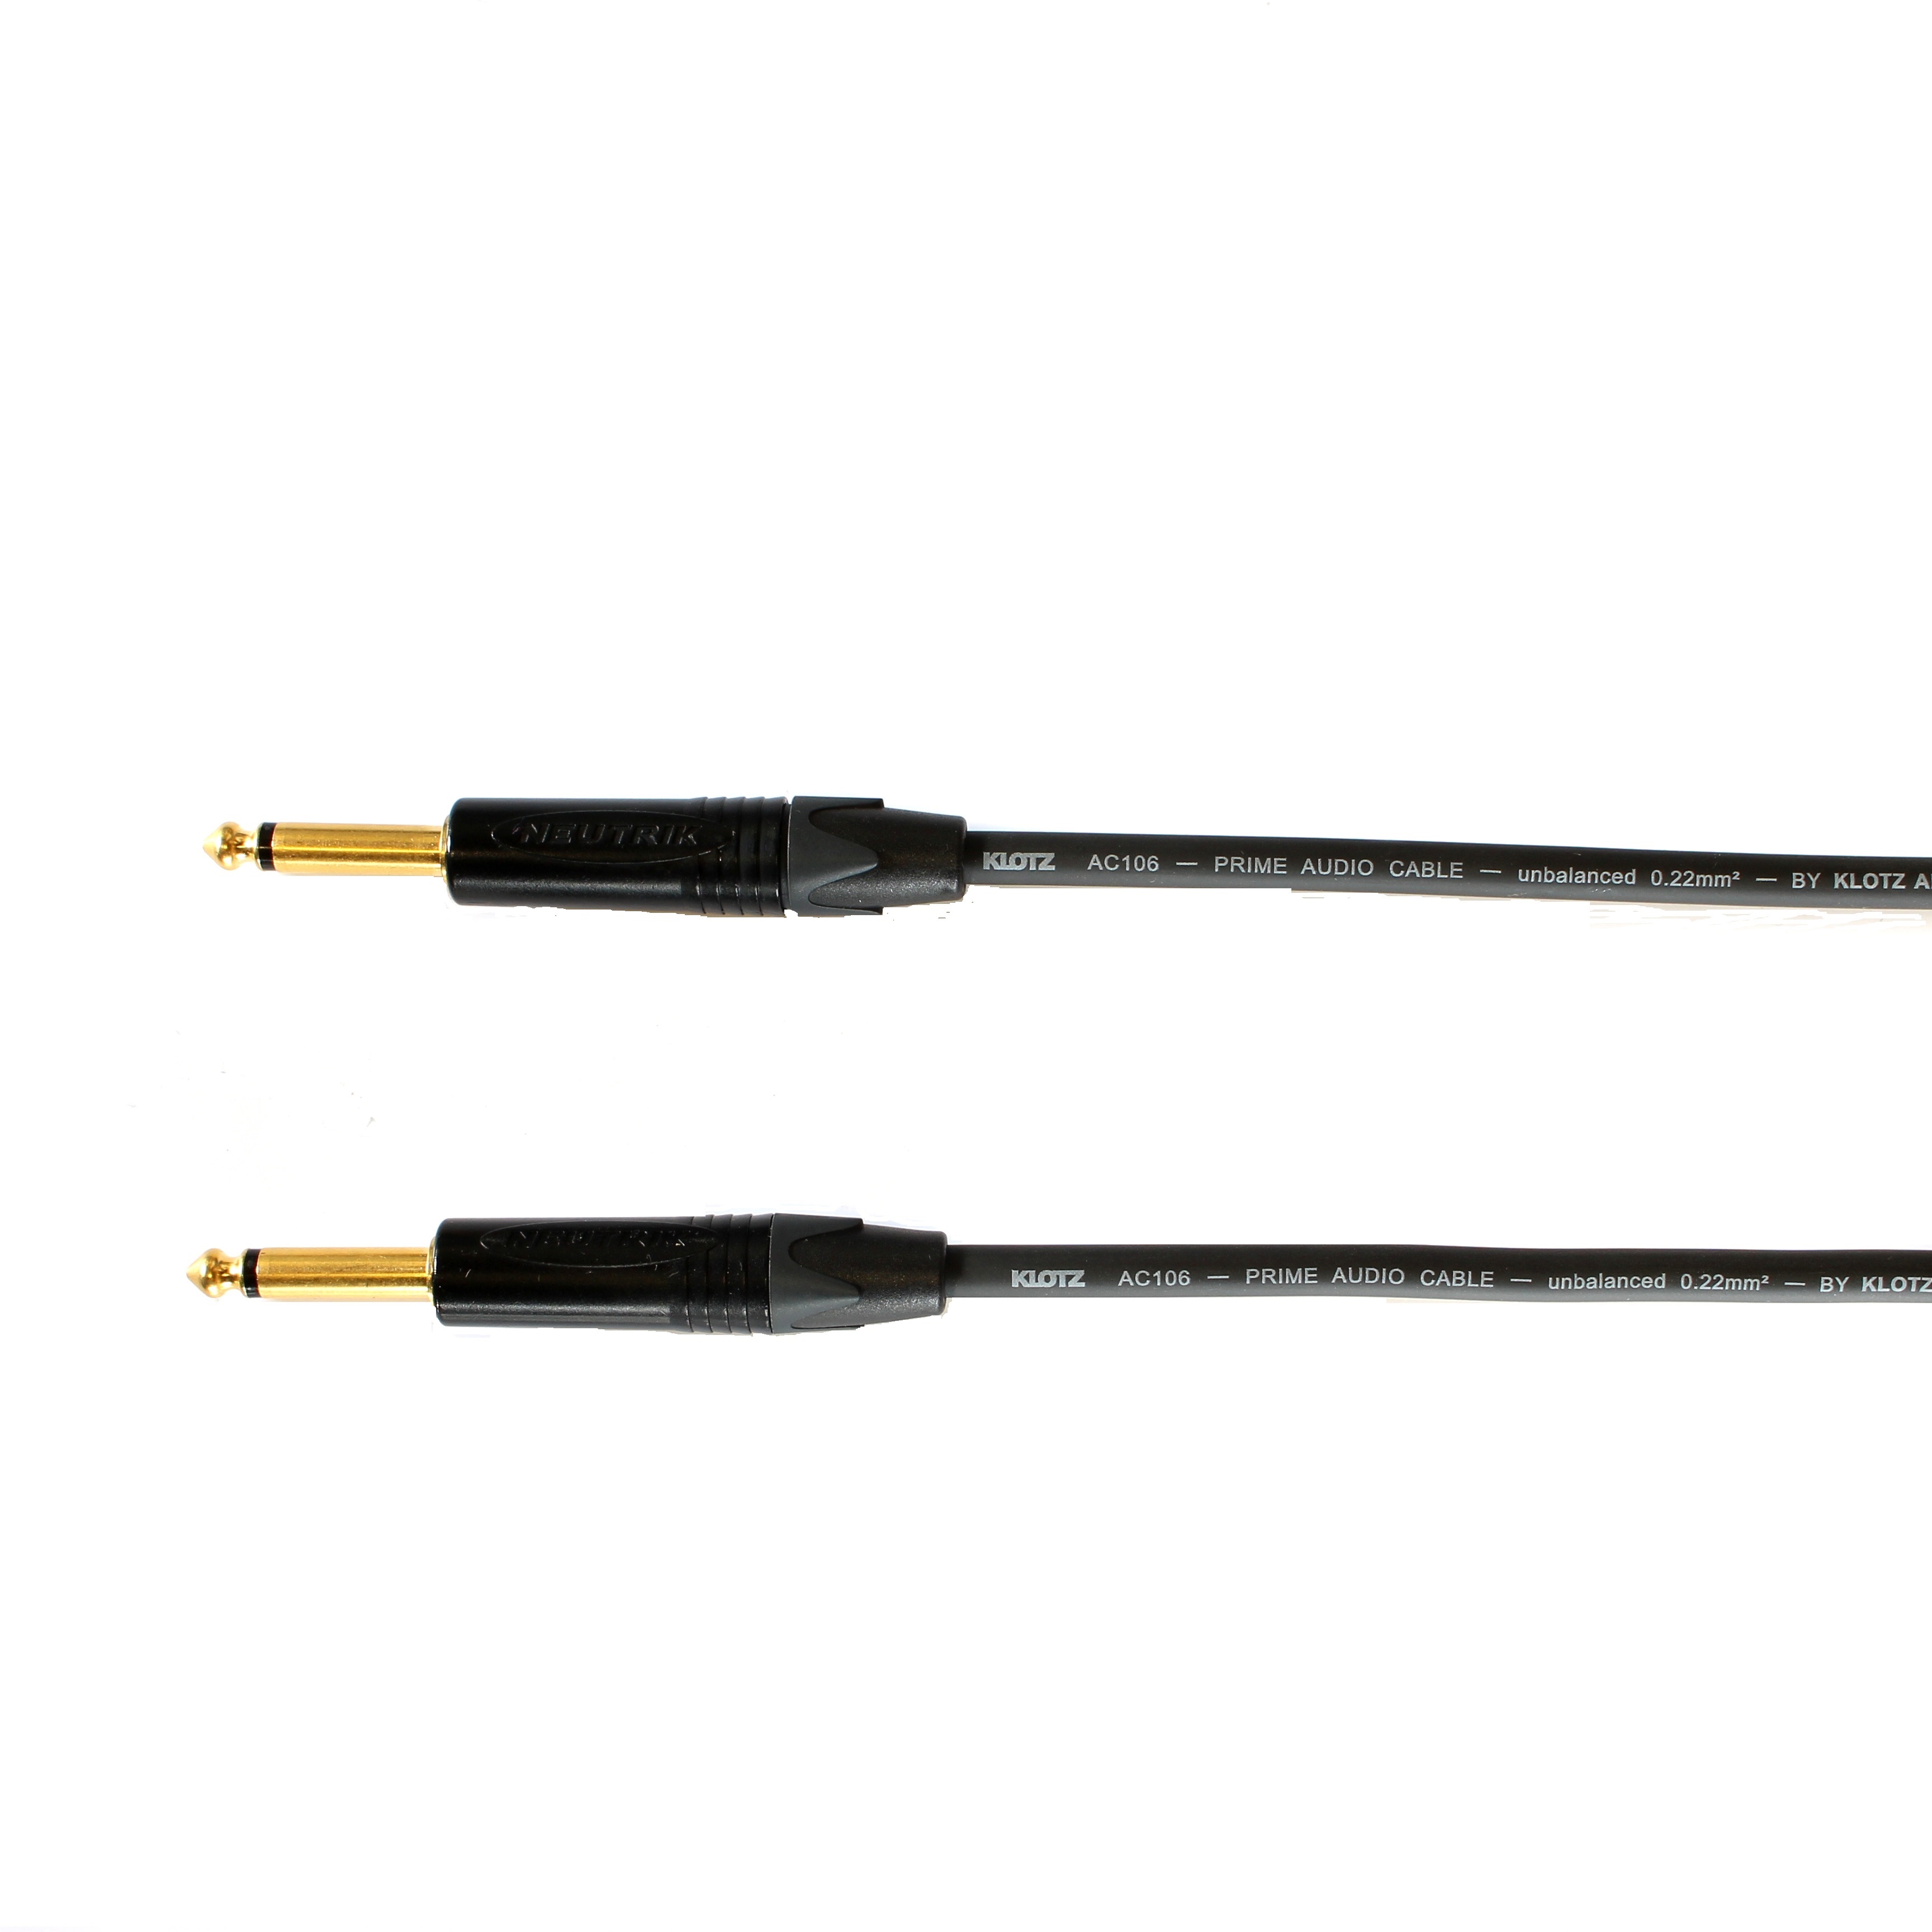 Kytarový kabel Jack 6,3 mono přímý/ Jack 6,3 mono přímý, 1,5 m, AC106